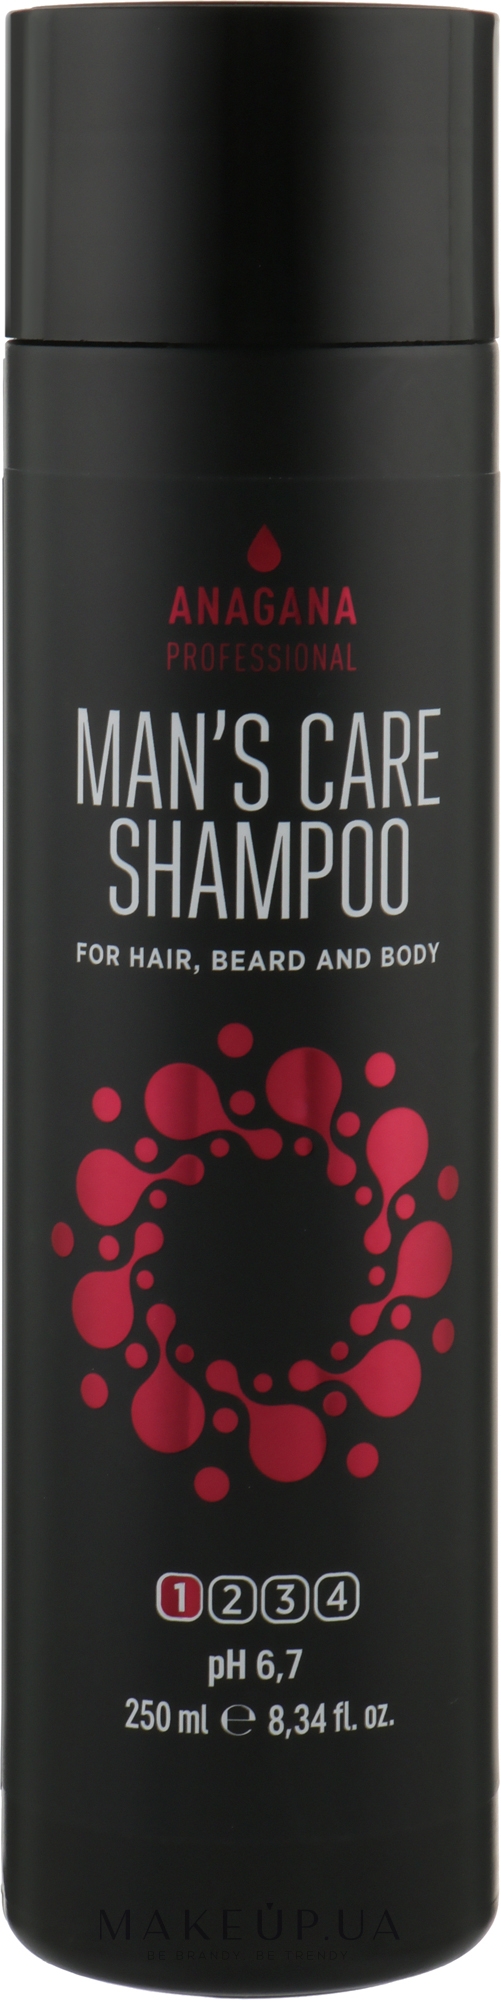 Шампунь "Мужской уход" для волос, бороды и тела - Anagana Professional Man's Care Shampoo — фото 250ml